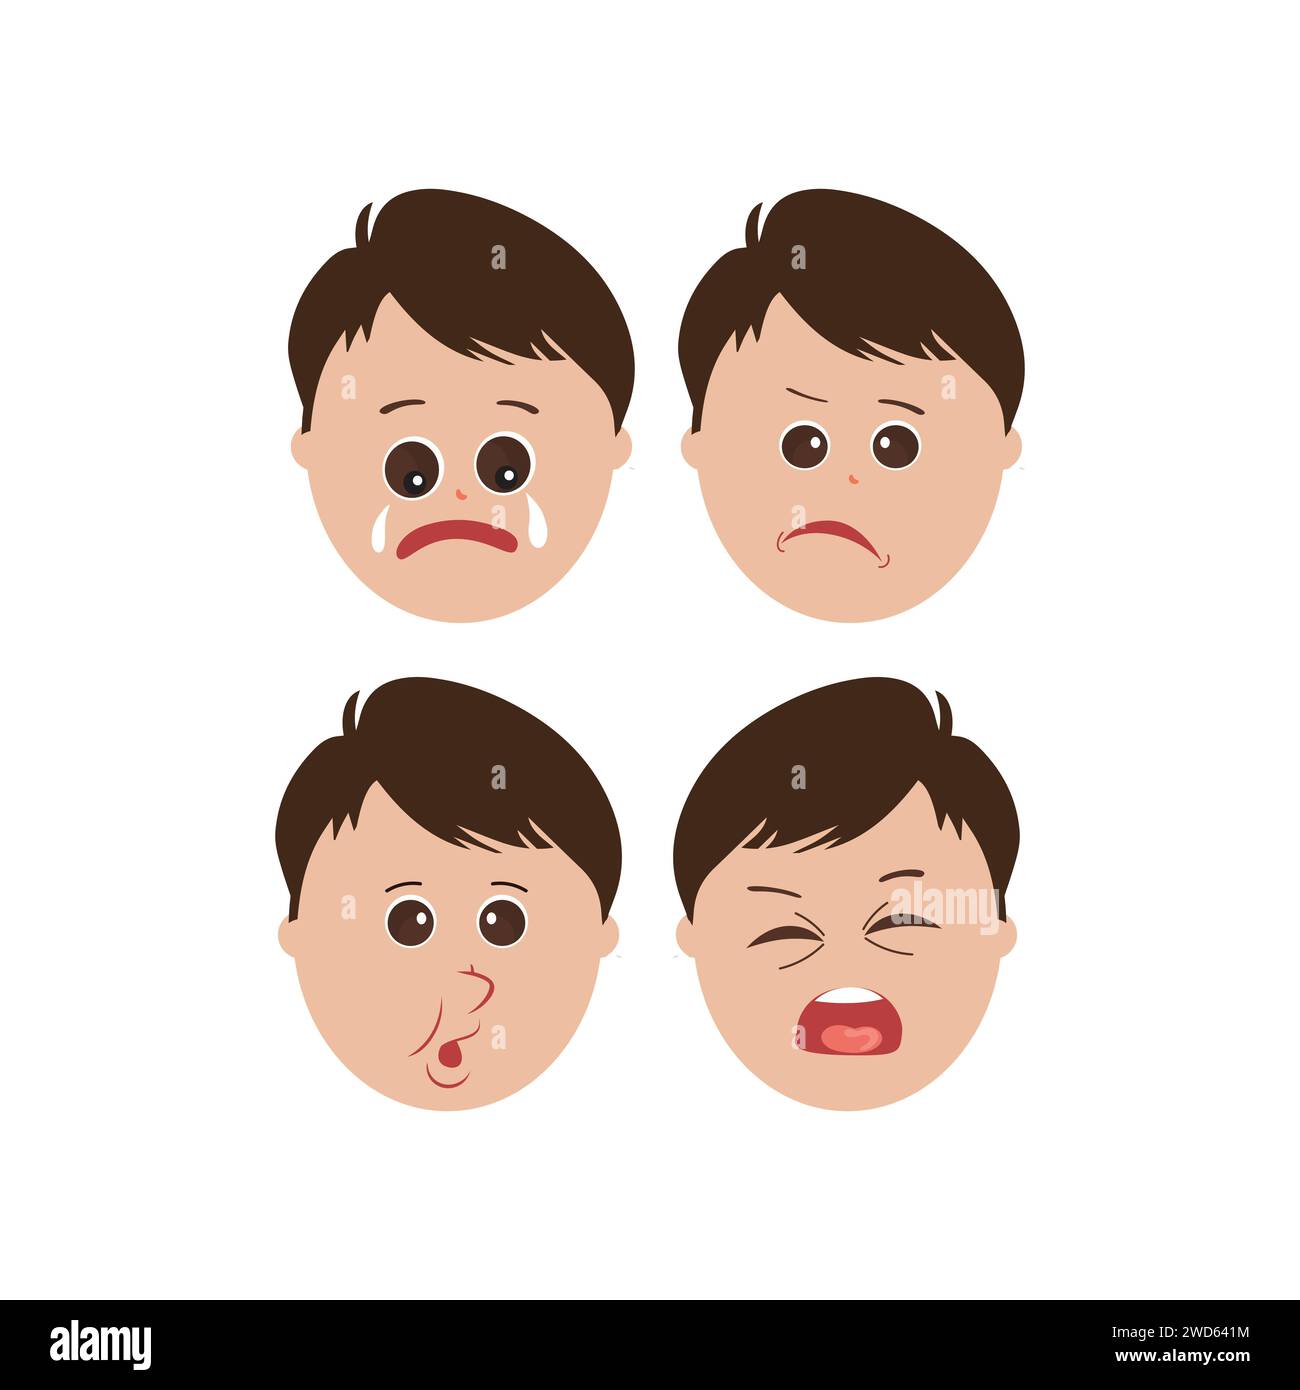 Expressions faciales mignonnes de petit garçon. Vecteur d'illustration de visages d'enfant avec différentes émotions telles que heureux, souriant, riant, clignant, en colère, confus Illustration de Vecteur